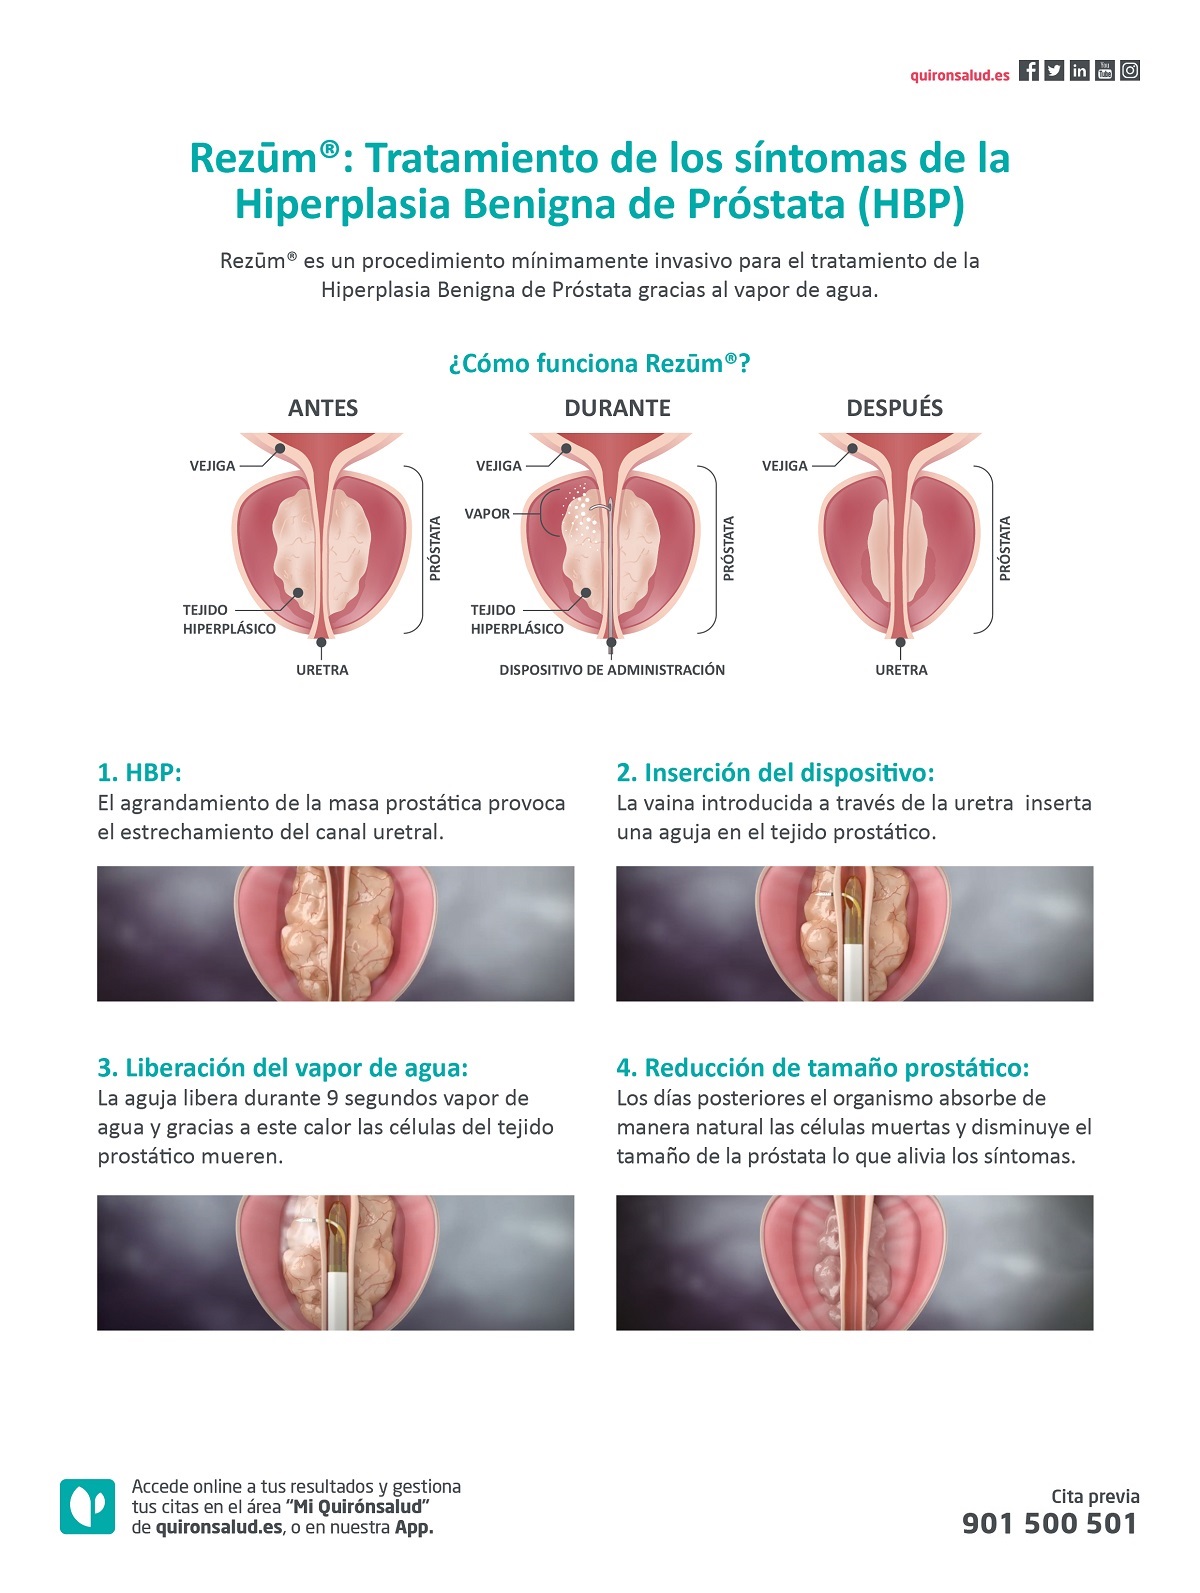 rezum valencia hiperplasia benigna de prostata